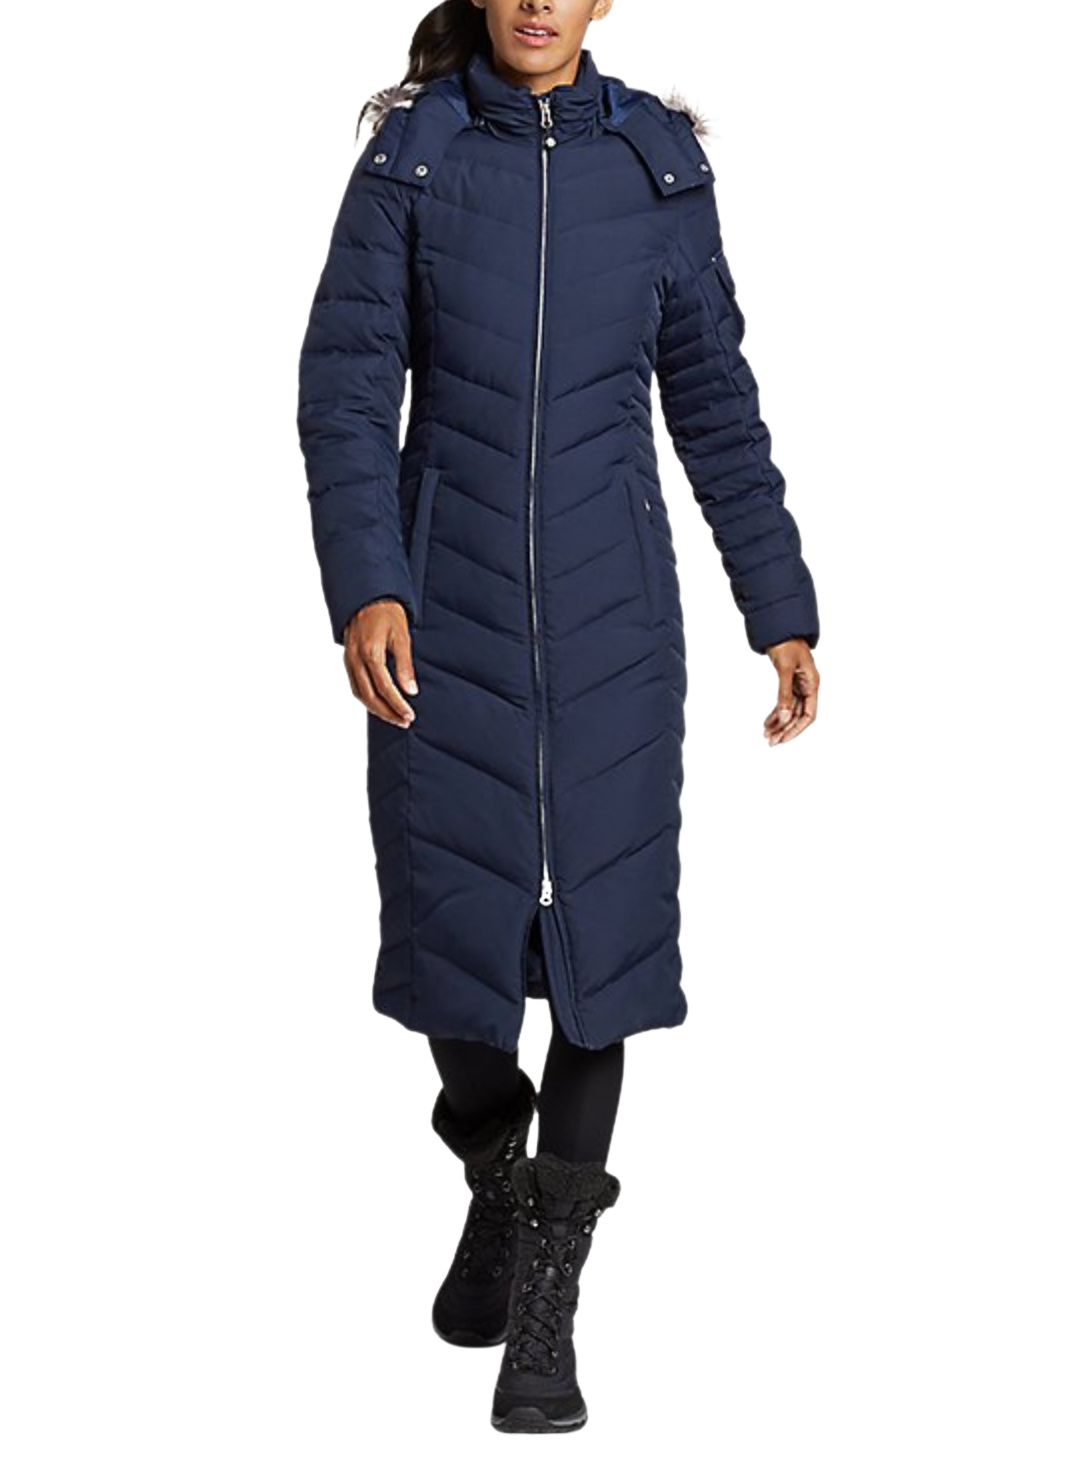 best-winter-coats